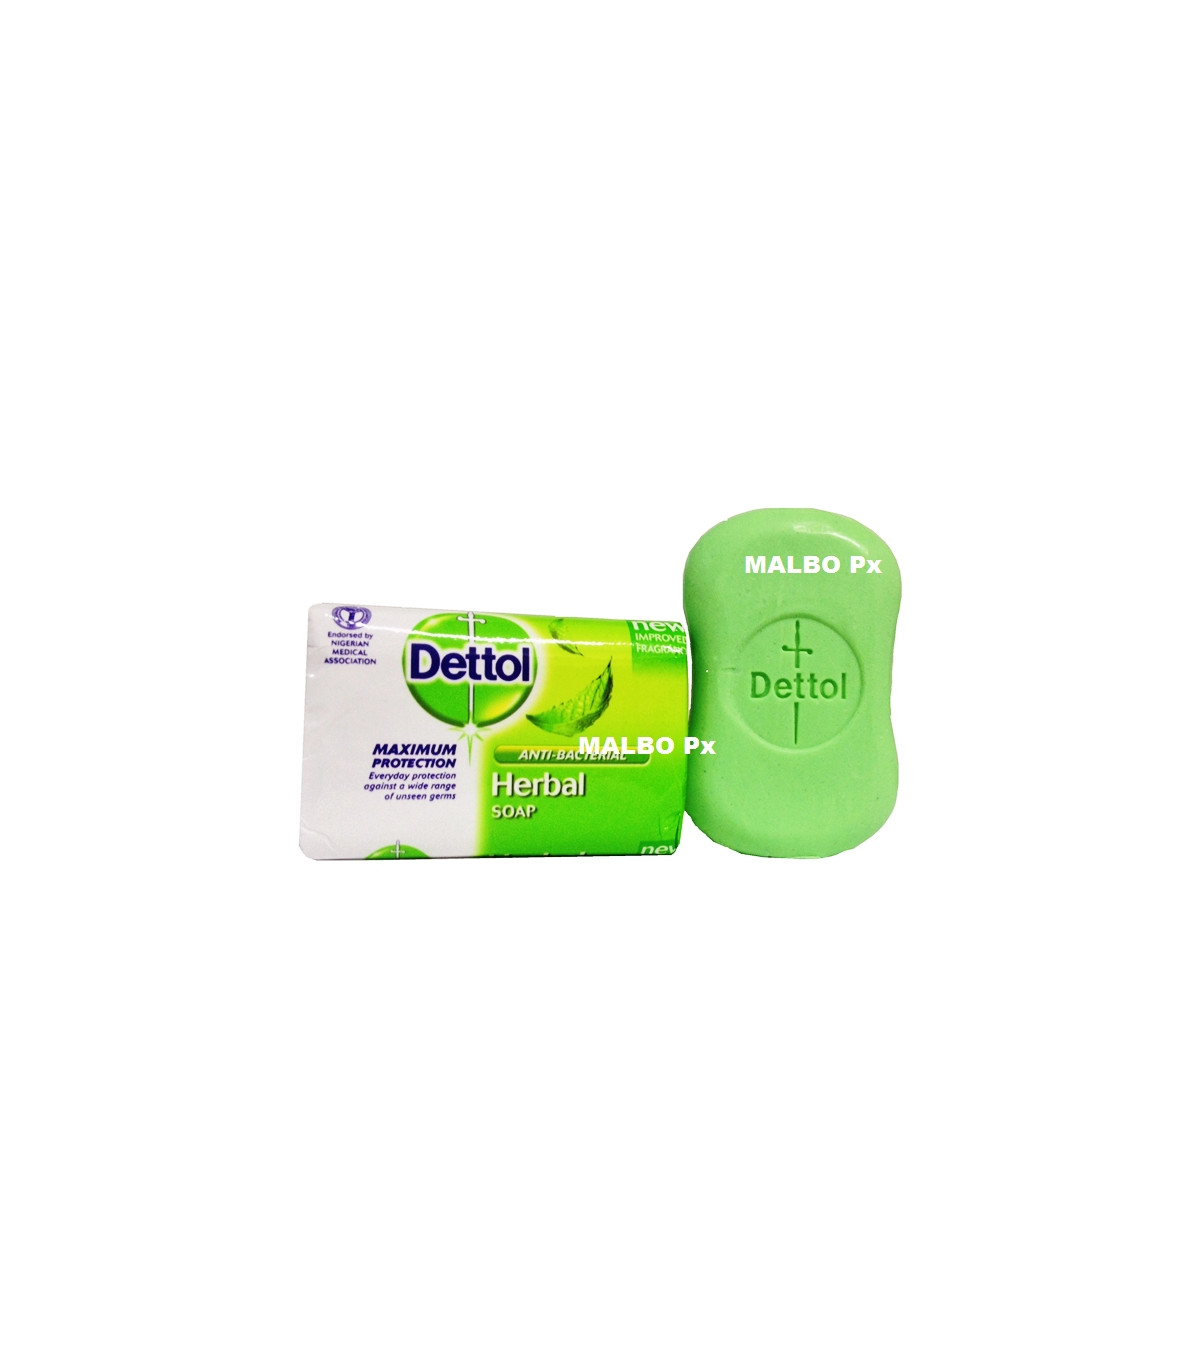 Dettol Antibacterial Herbal Soap - 70g